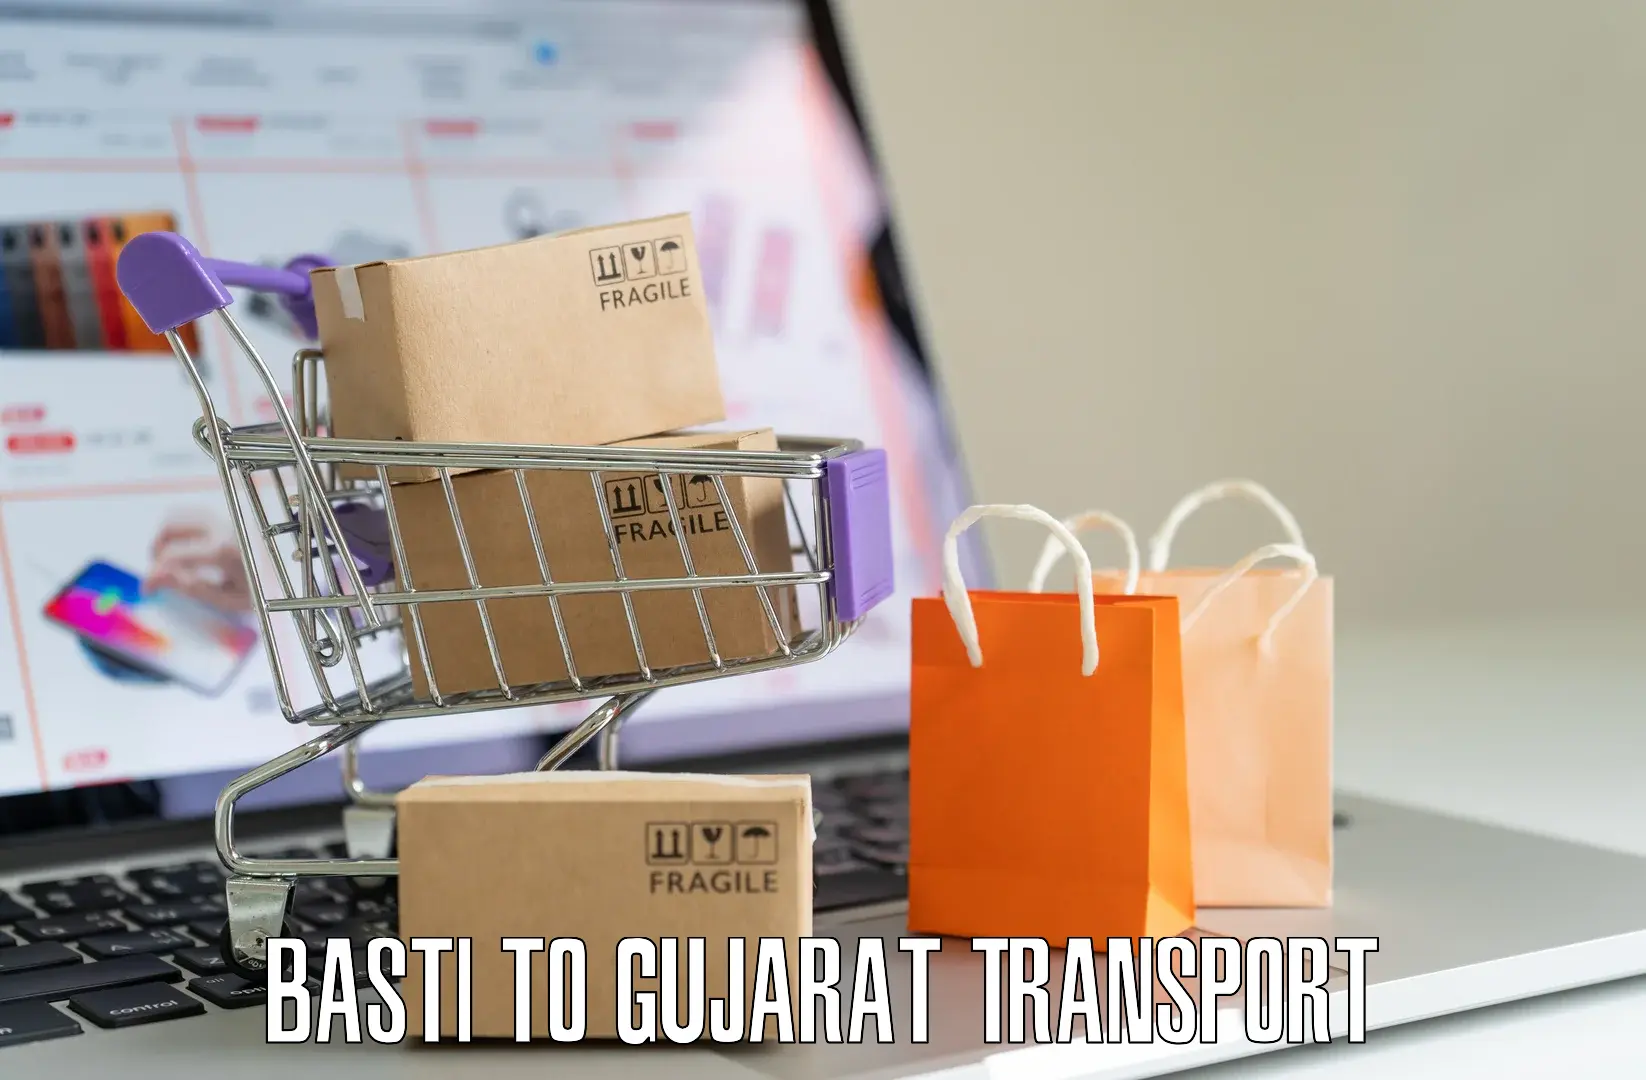 Daily parcel service transport Basti to Nanpura